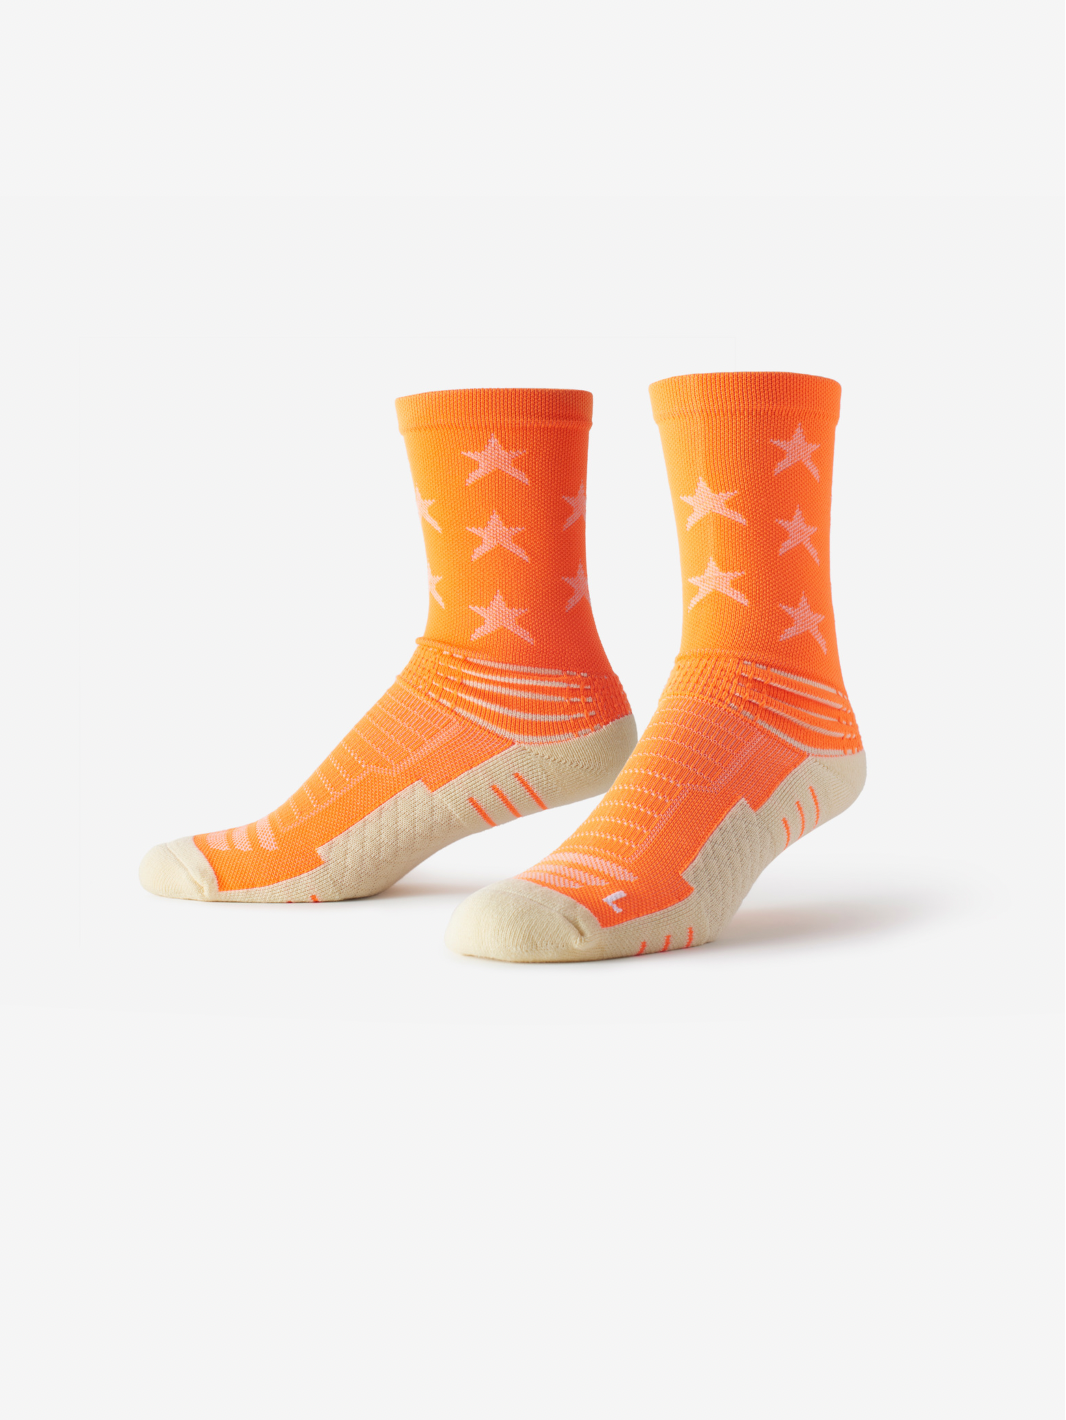 SMRTFT | Best Athletic Star Mid High Sock | Best Orange Socks For Men